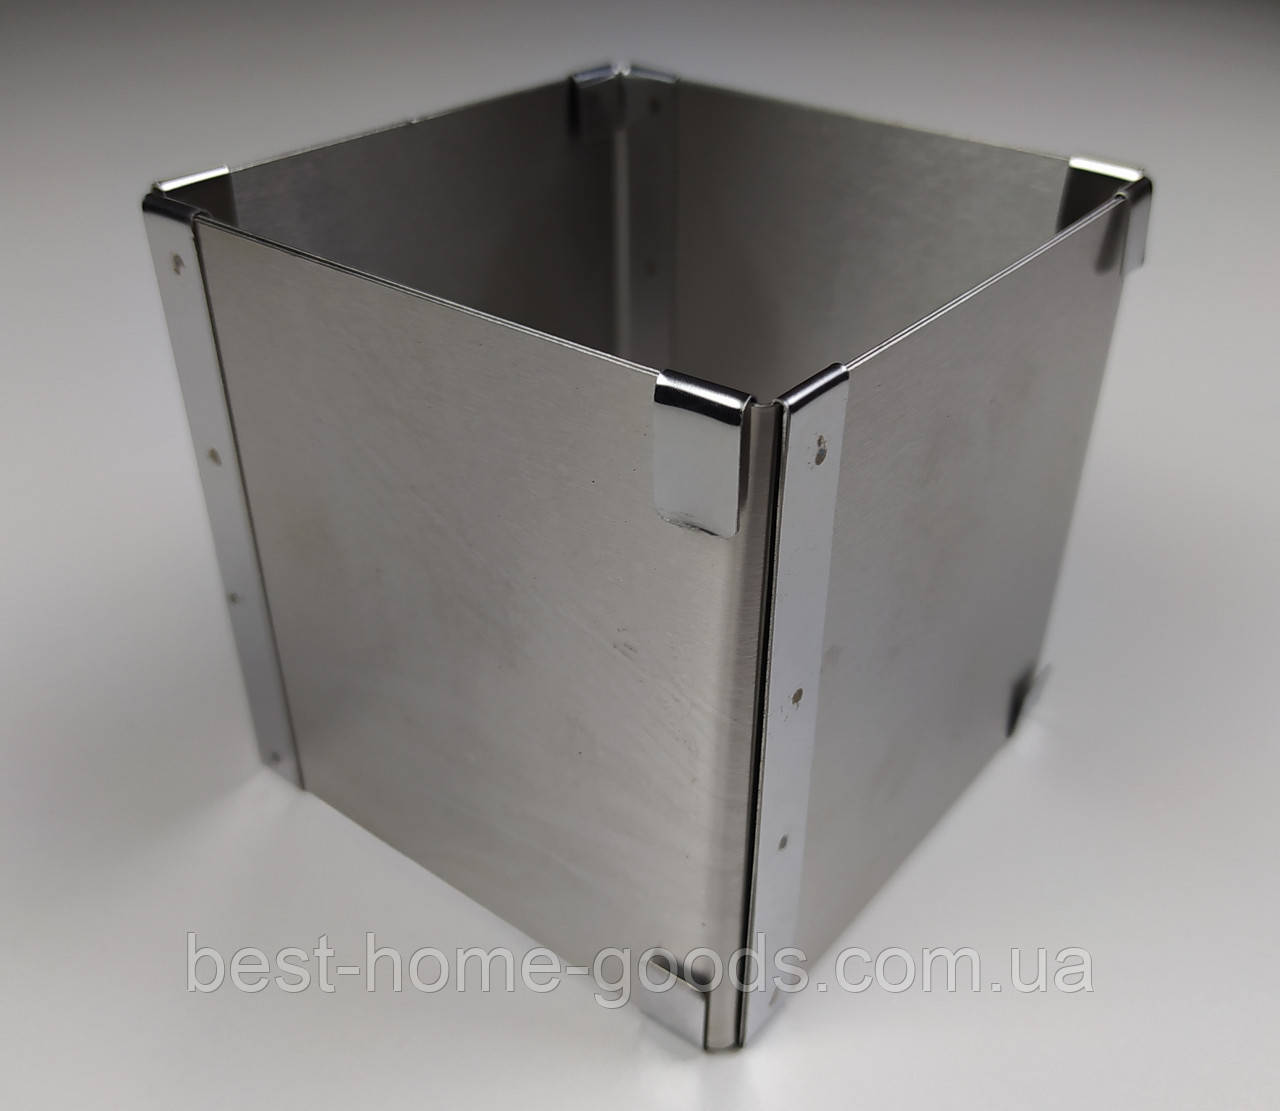 Кондитерська розсувна форма для випічки квадратна нержавіюча сталь 10см * 10см, В - 10см.